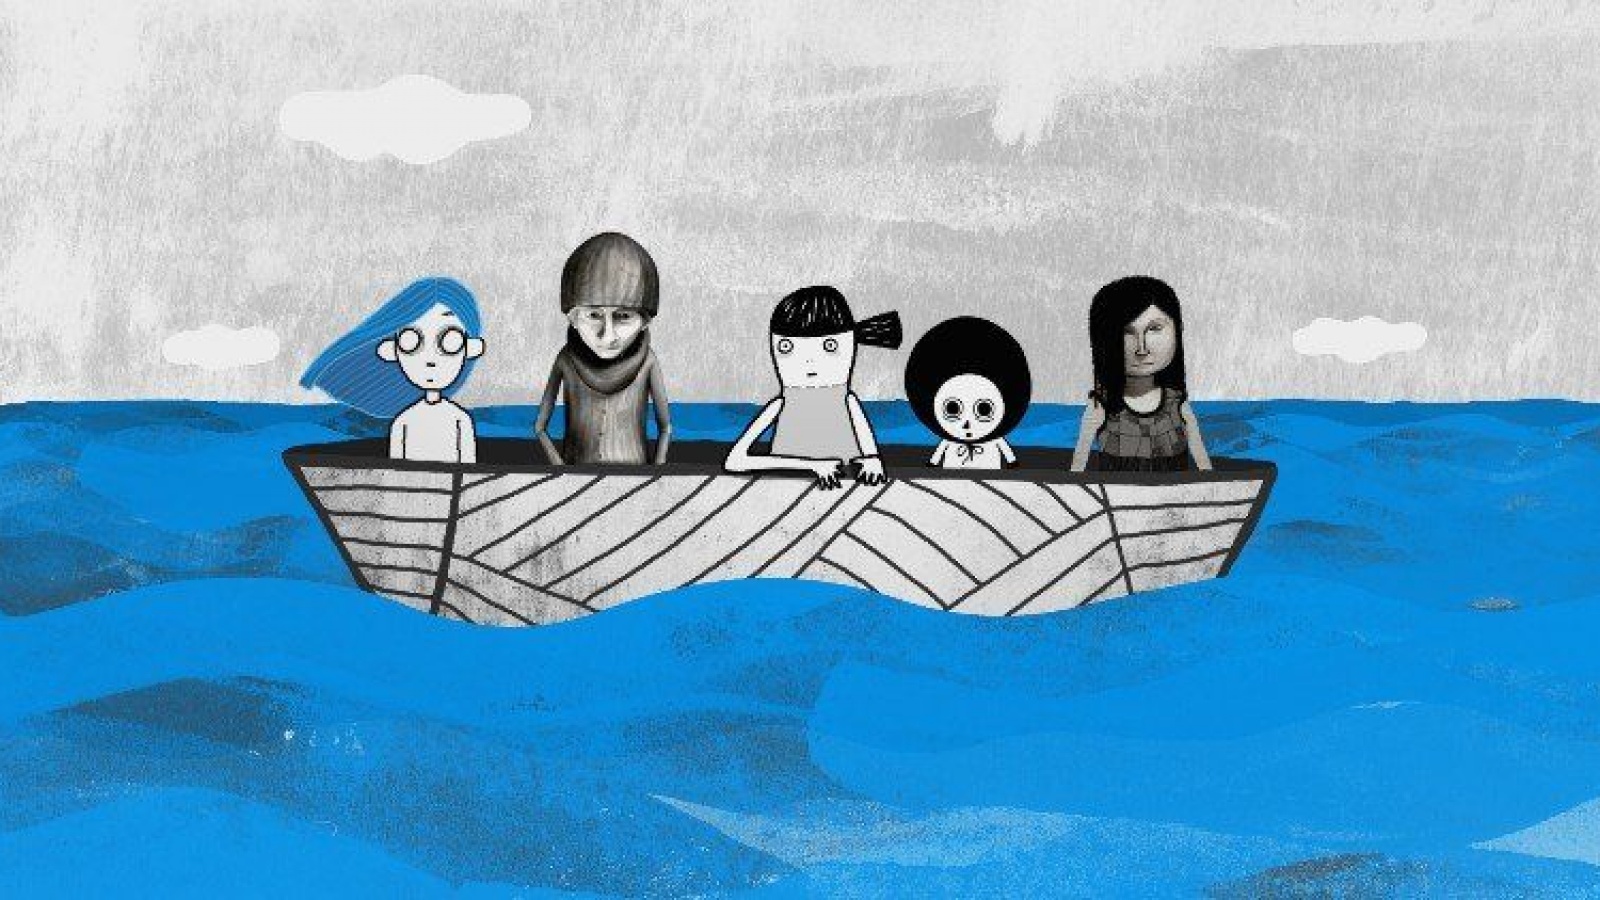 rus: У човні посеред води пливуть п'ятеро персонажів та персонажок. Усі з них чорнобілі, крім дівчинки з блакитним волоссям.